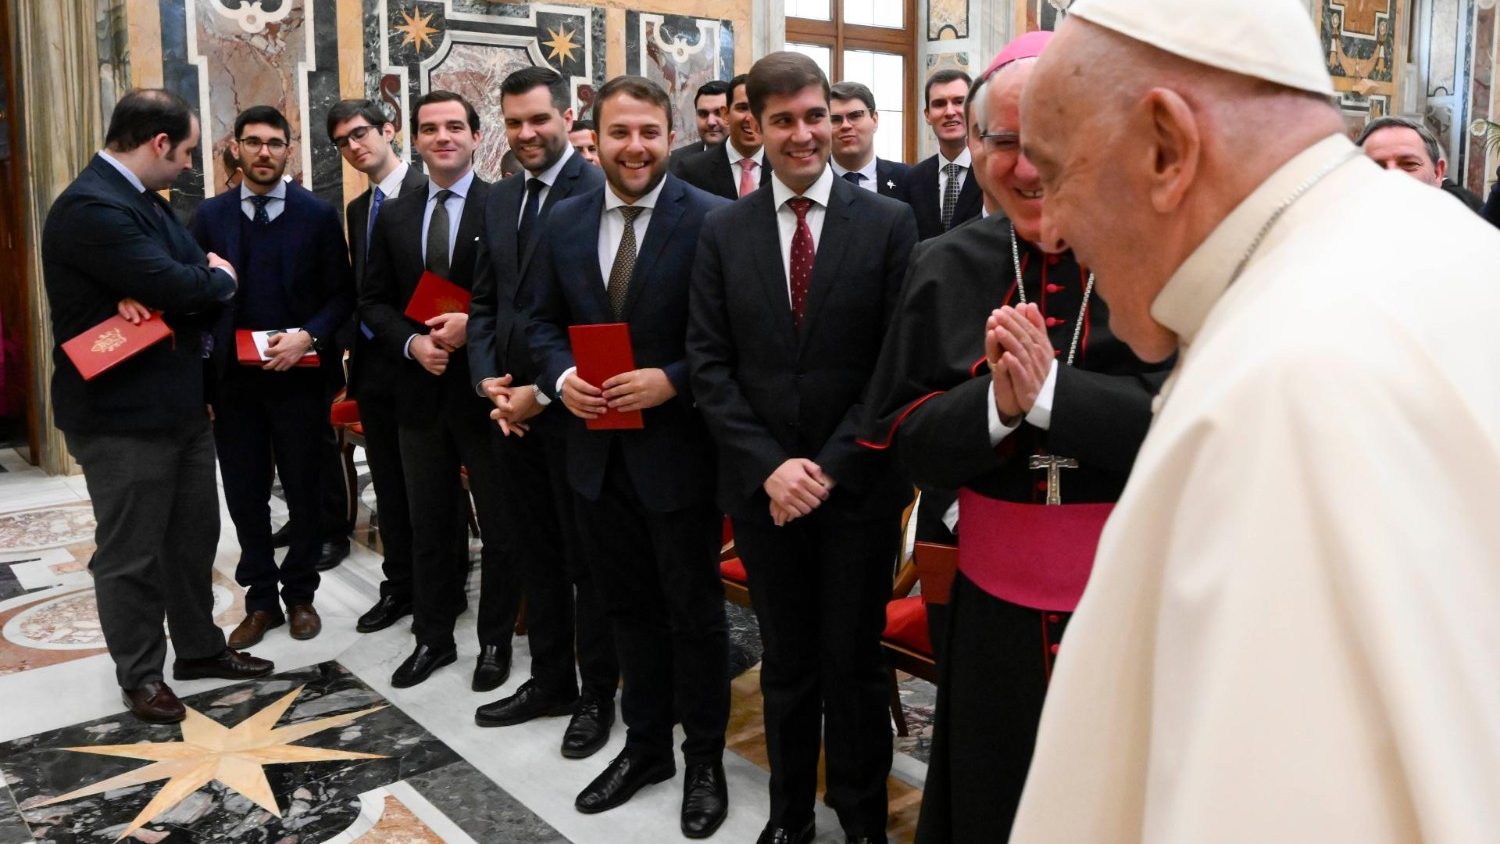 Rostros de emoción en los seminaristas al ver llegar al Santo Padre. Vatican Media 